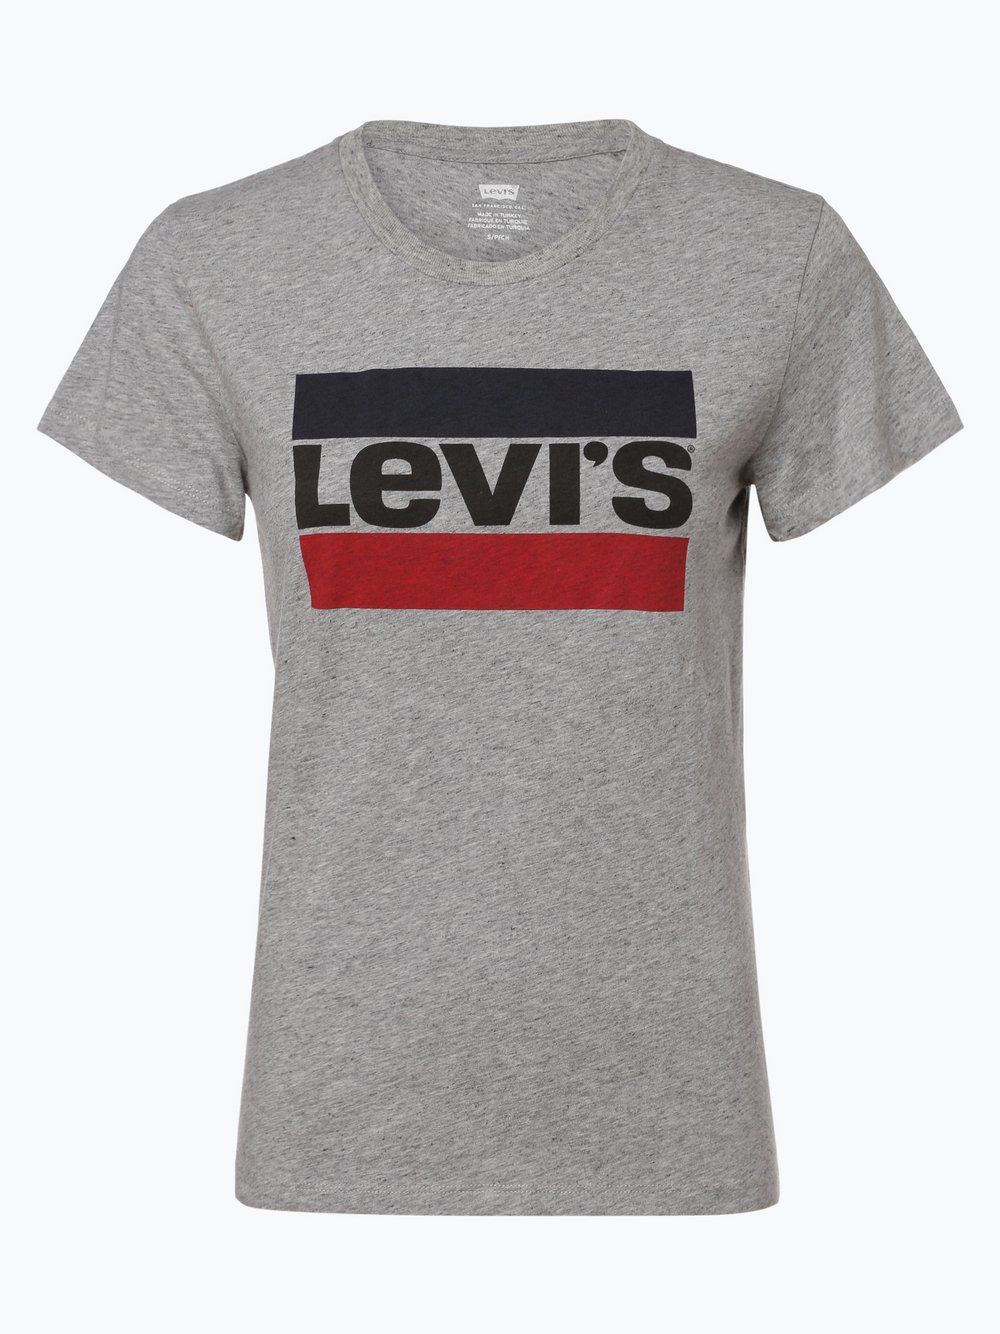 Levi's - T-shirt damski, szary